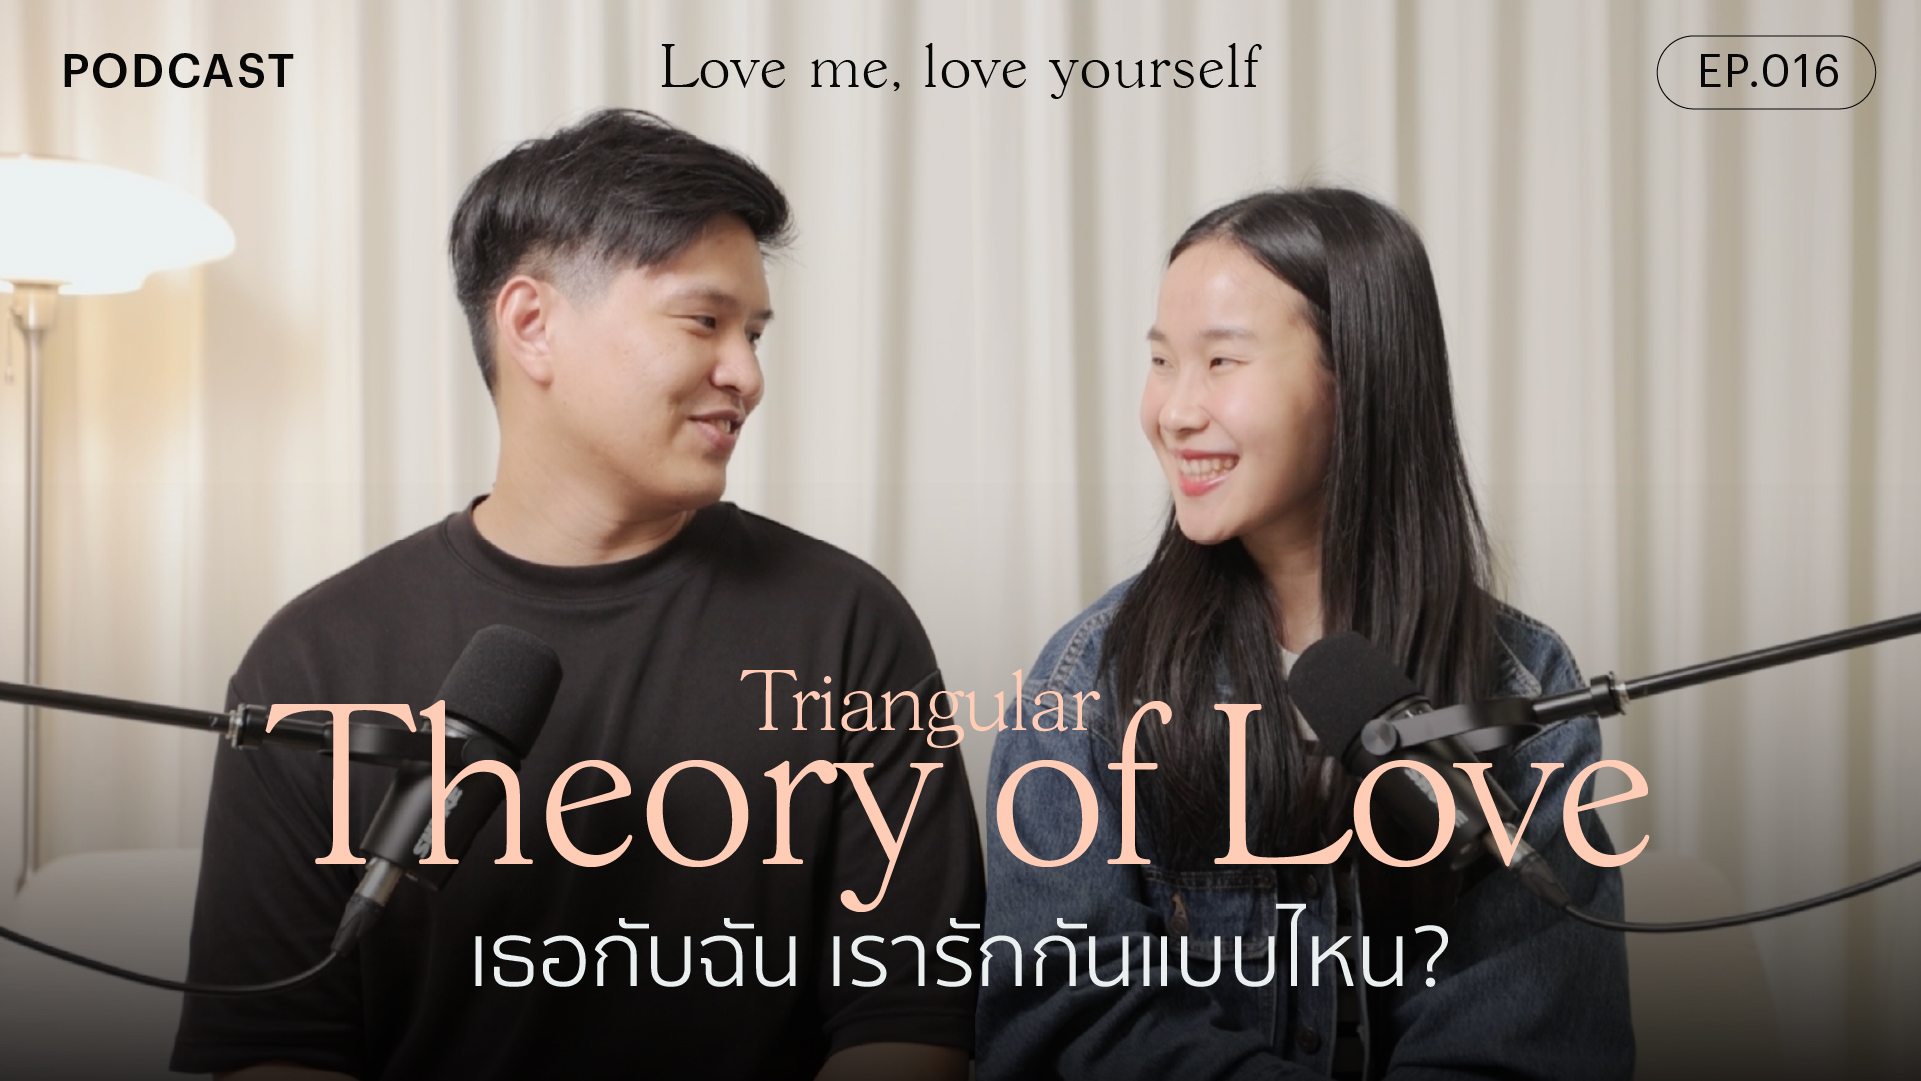 Triangular Theory of Love เธอกับฉัน เรารักกันแบบไหน?